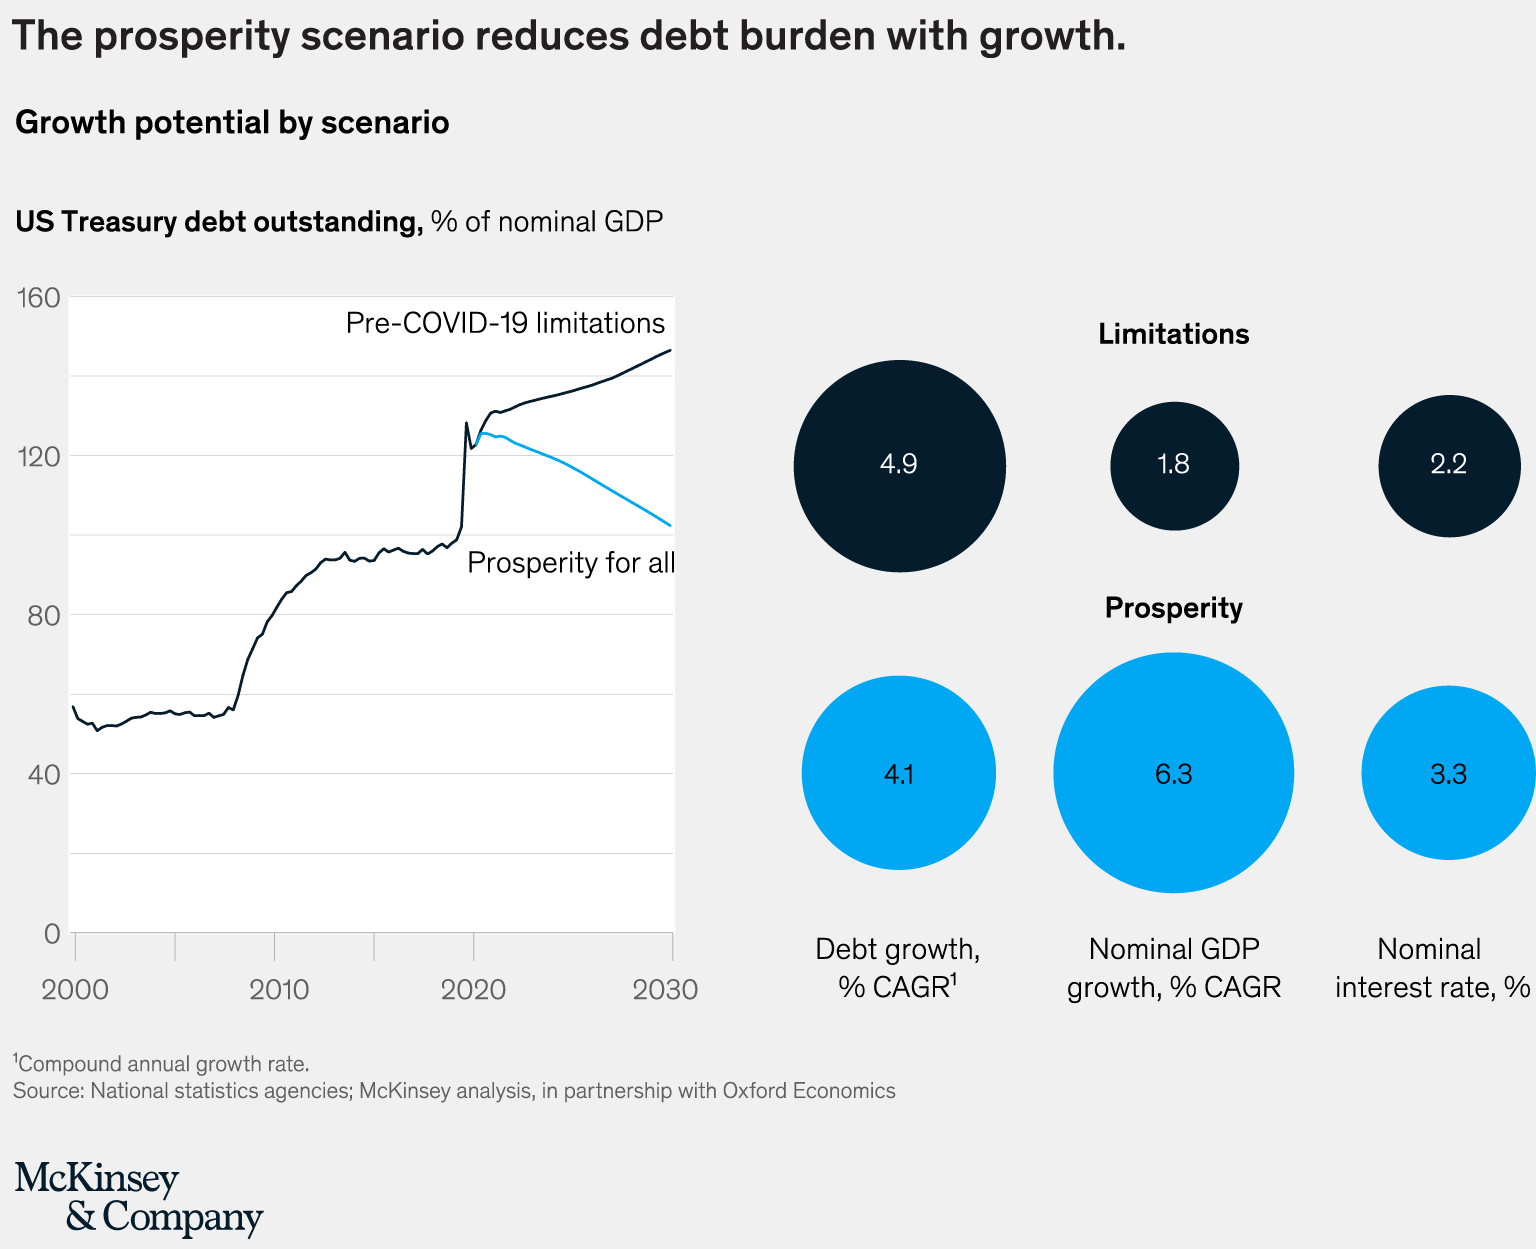 The prosperity scenario reduces debt burden with growth.